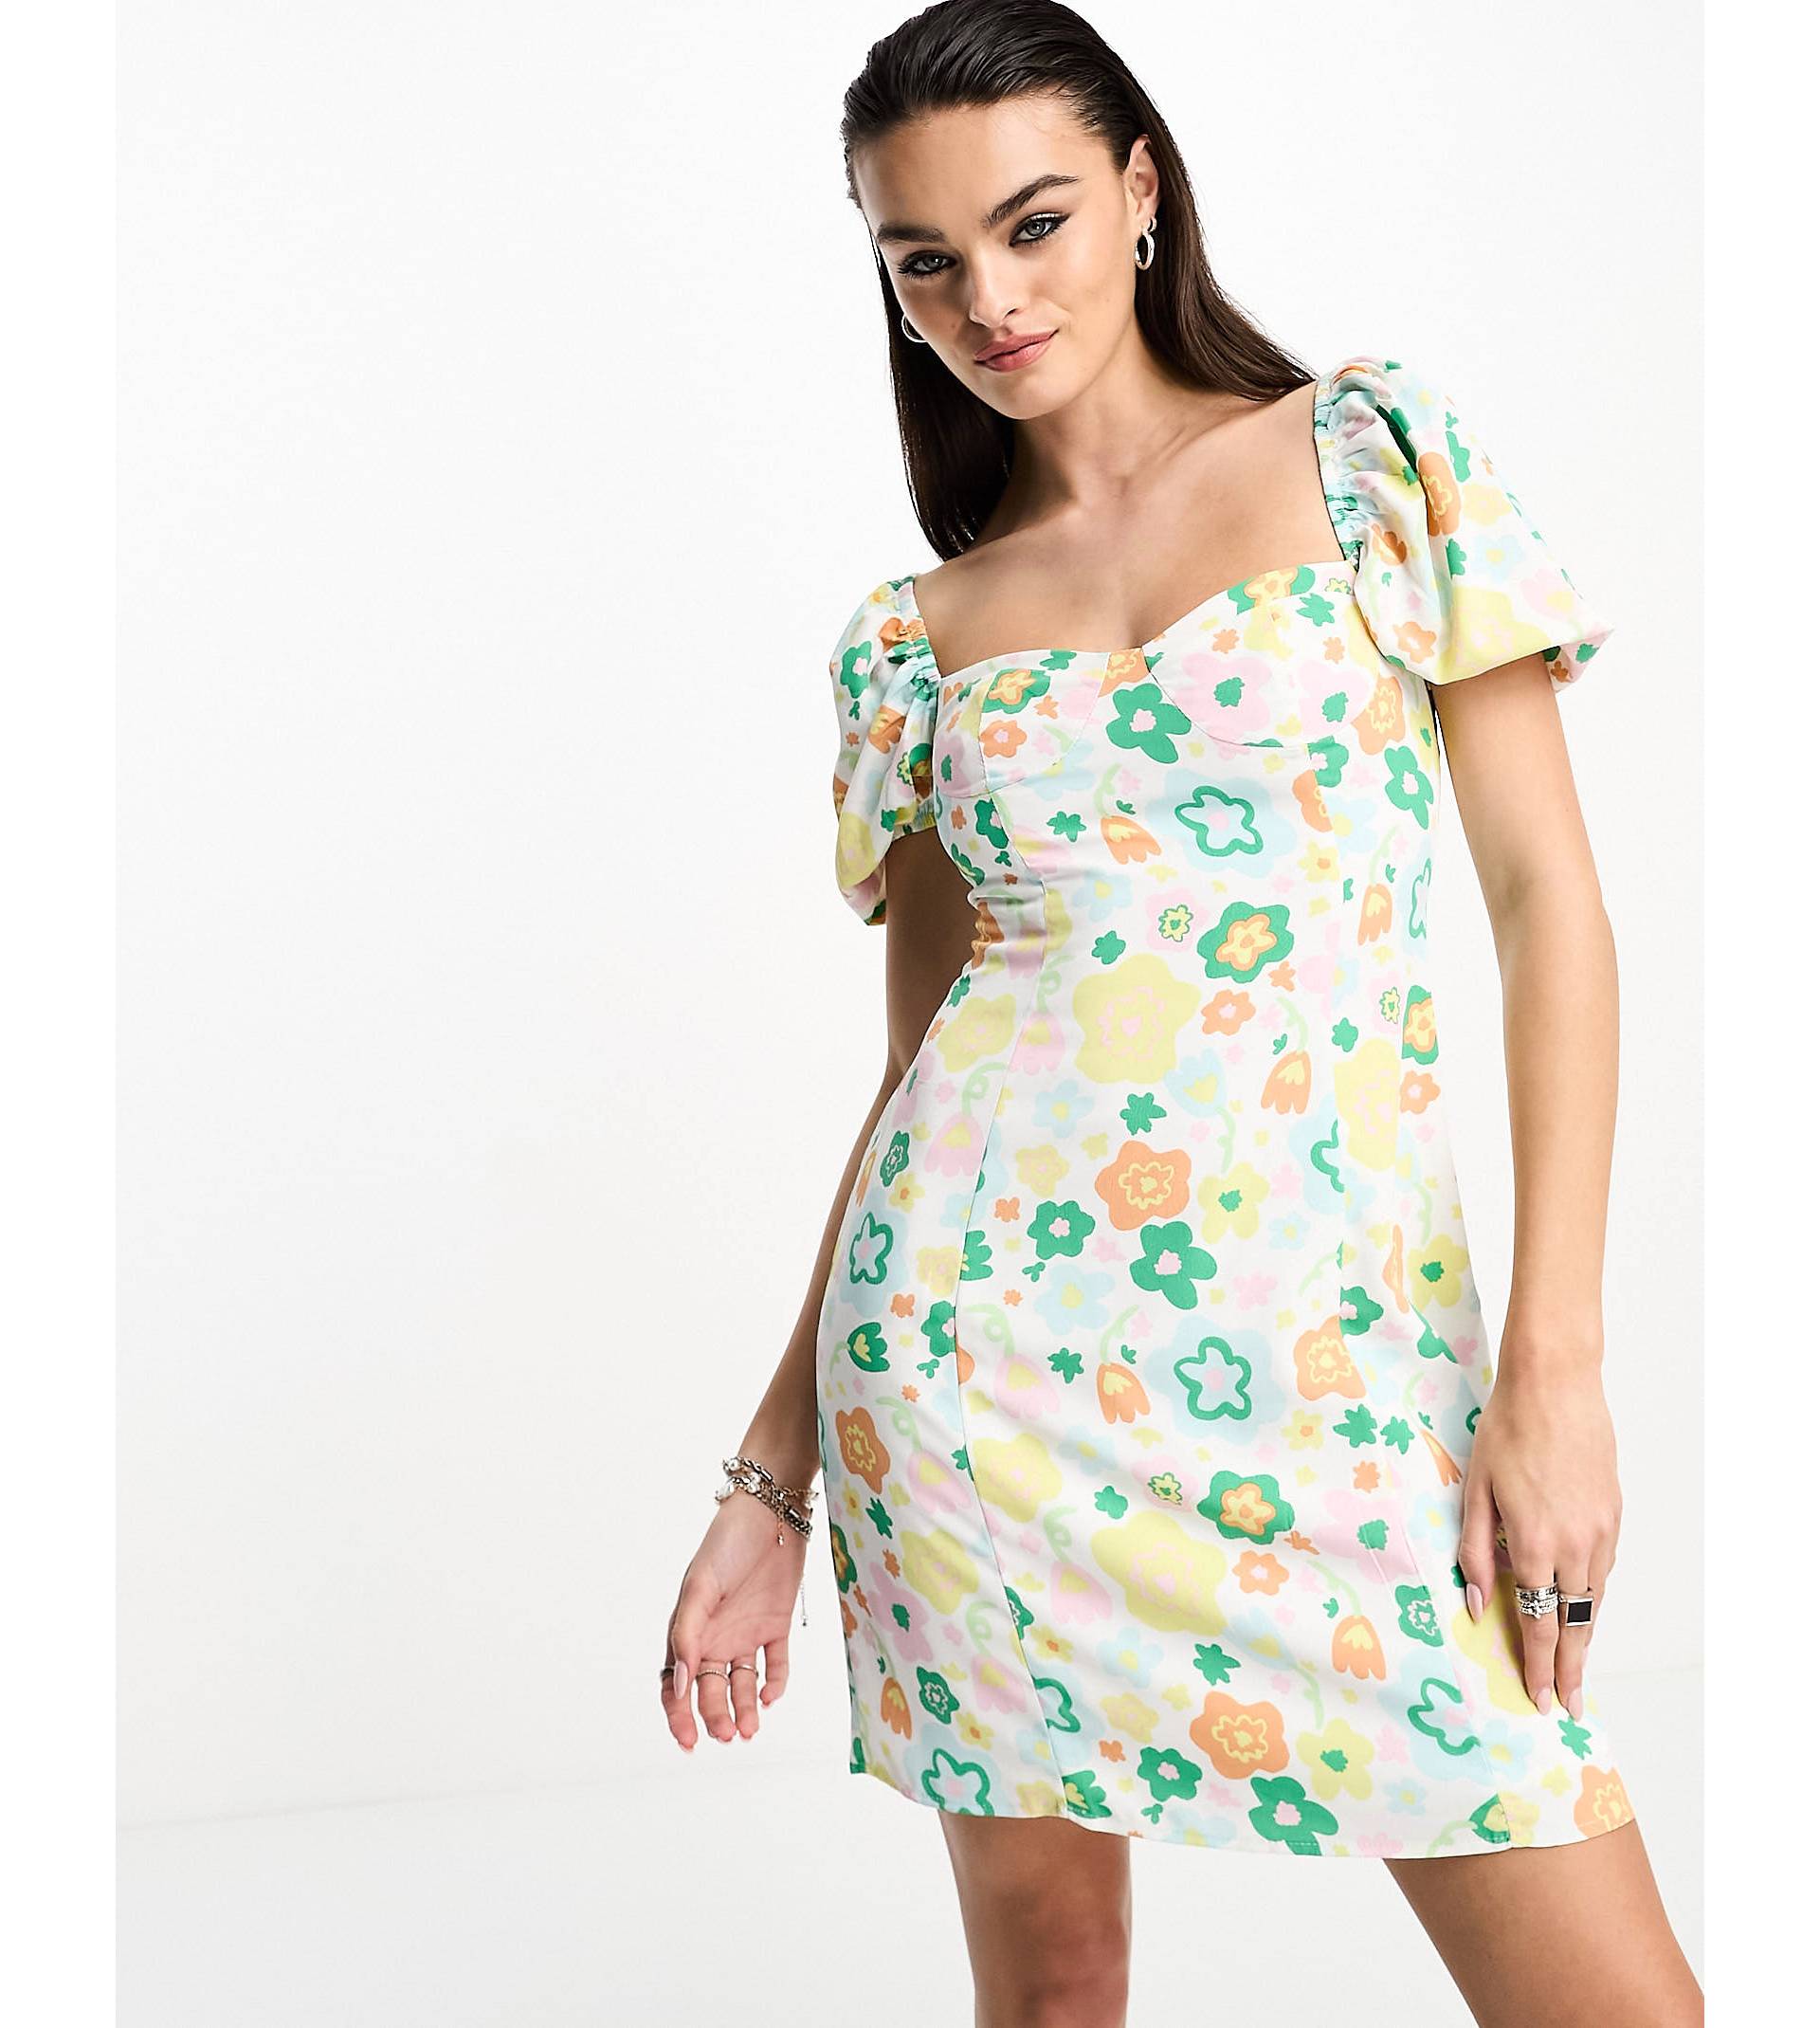 Гламурное свободное мини-платье доярки в стиле ретро с весенним цветочным принтом Glamorous cheongsam new spring retro modified dress suede